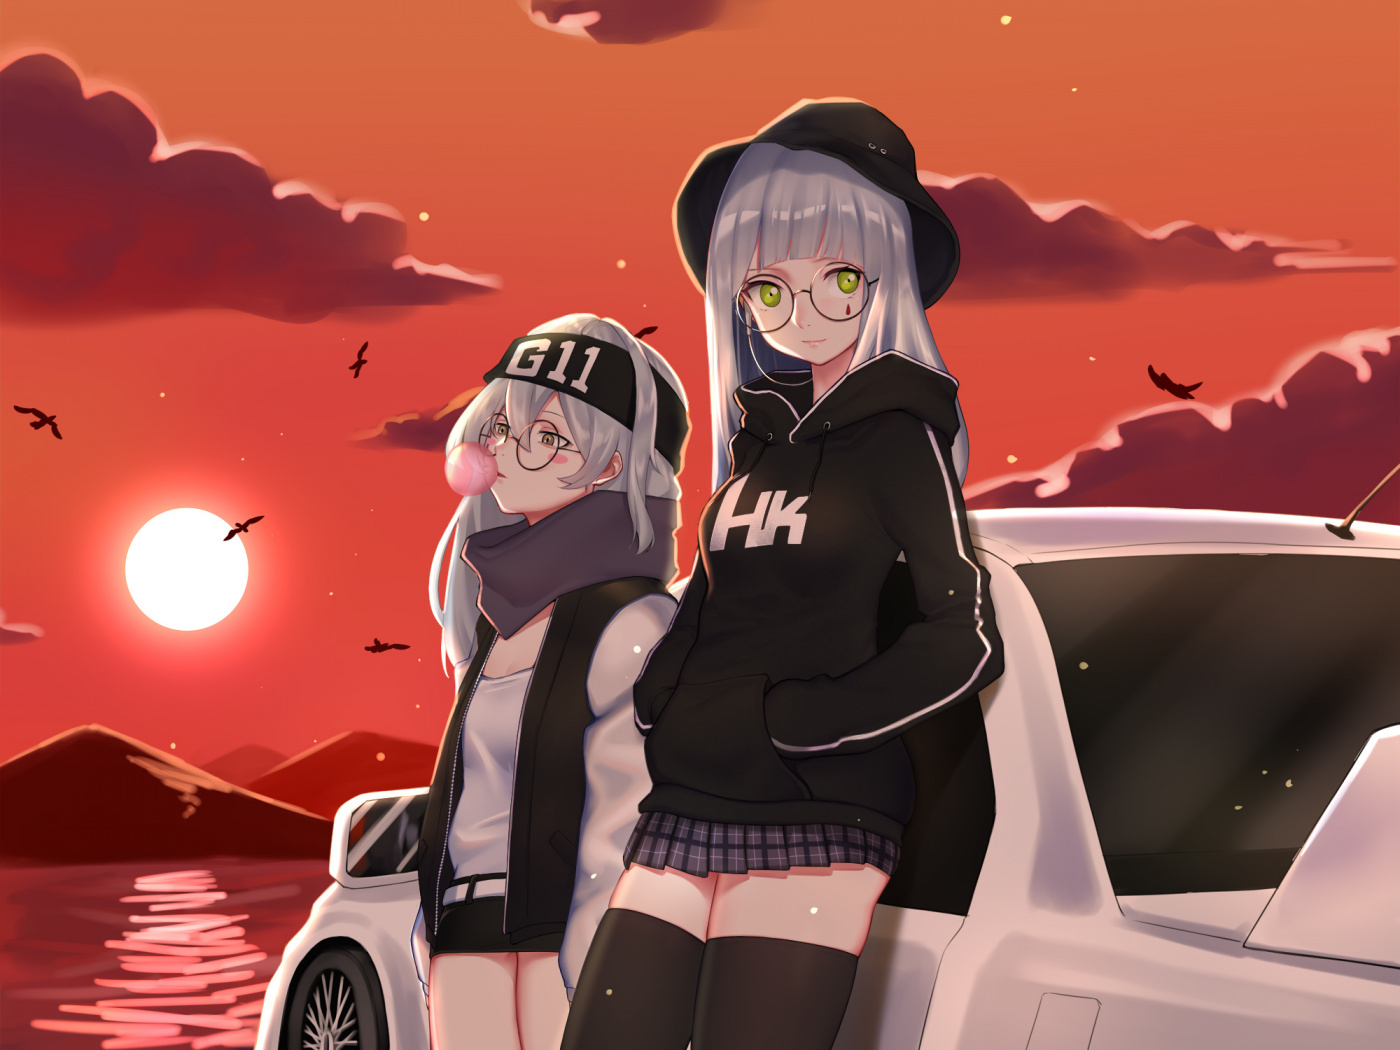 Anime Girls Frontline G11 , HD Wallpaper & Backgrounds